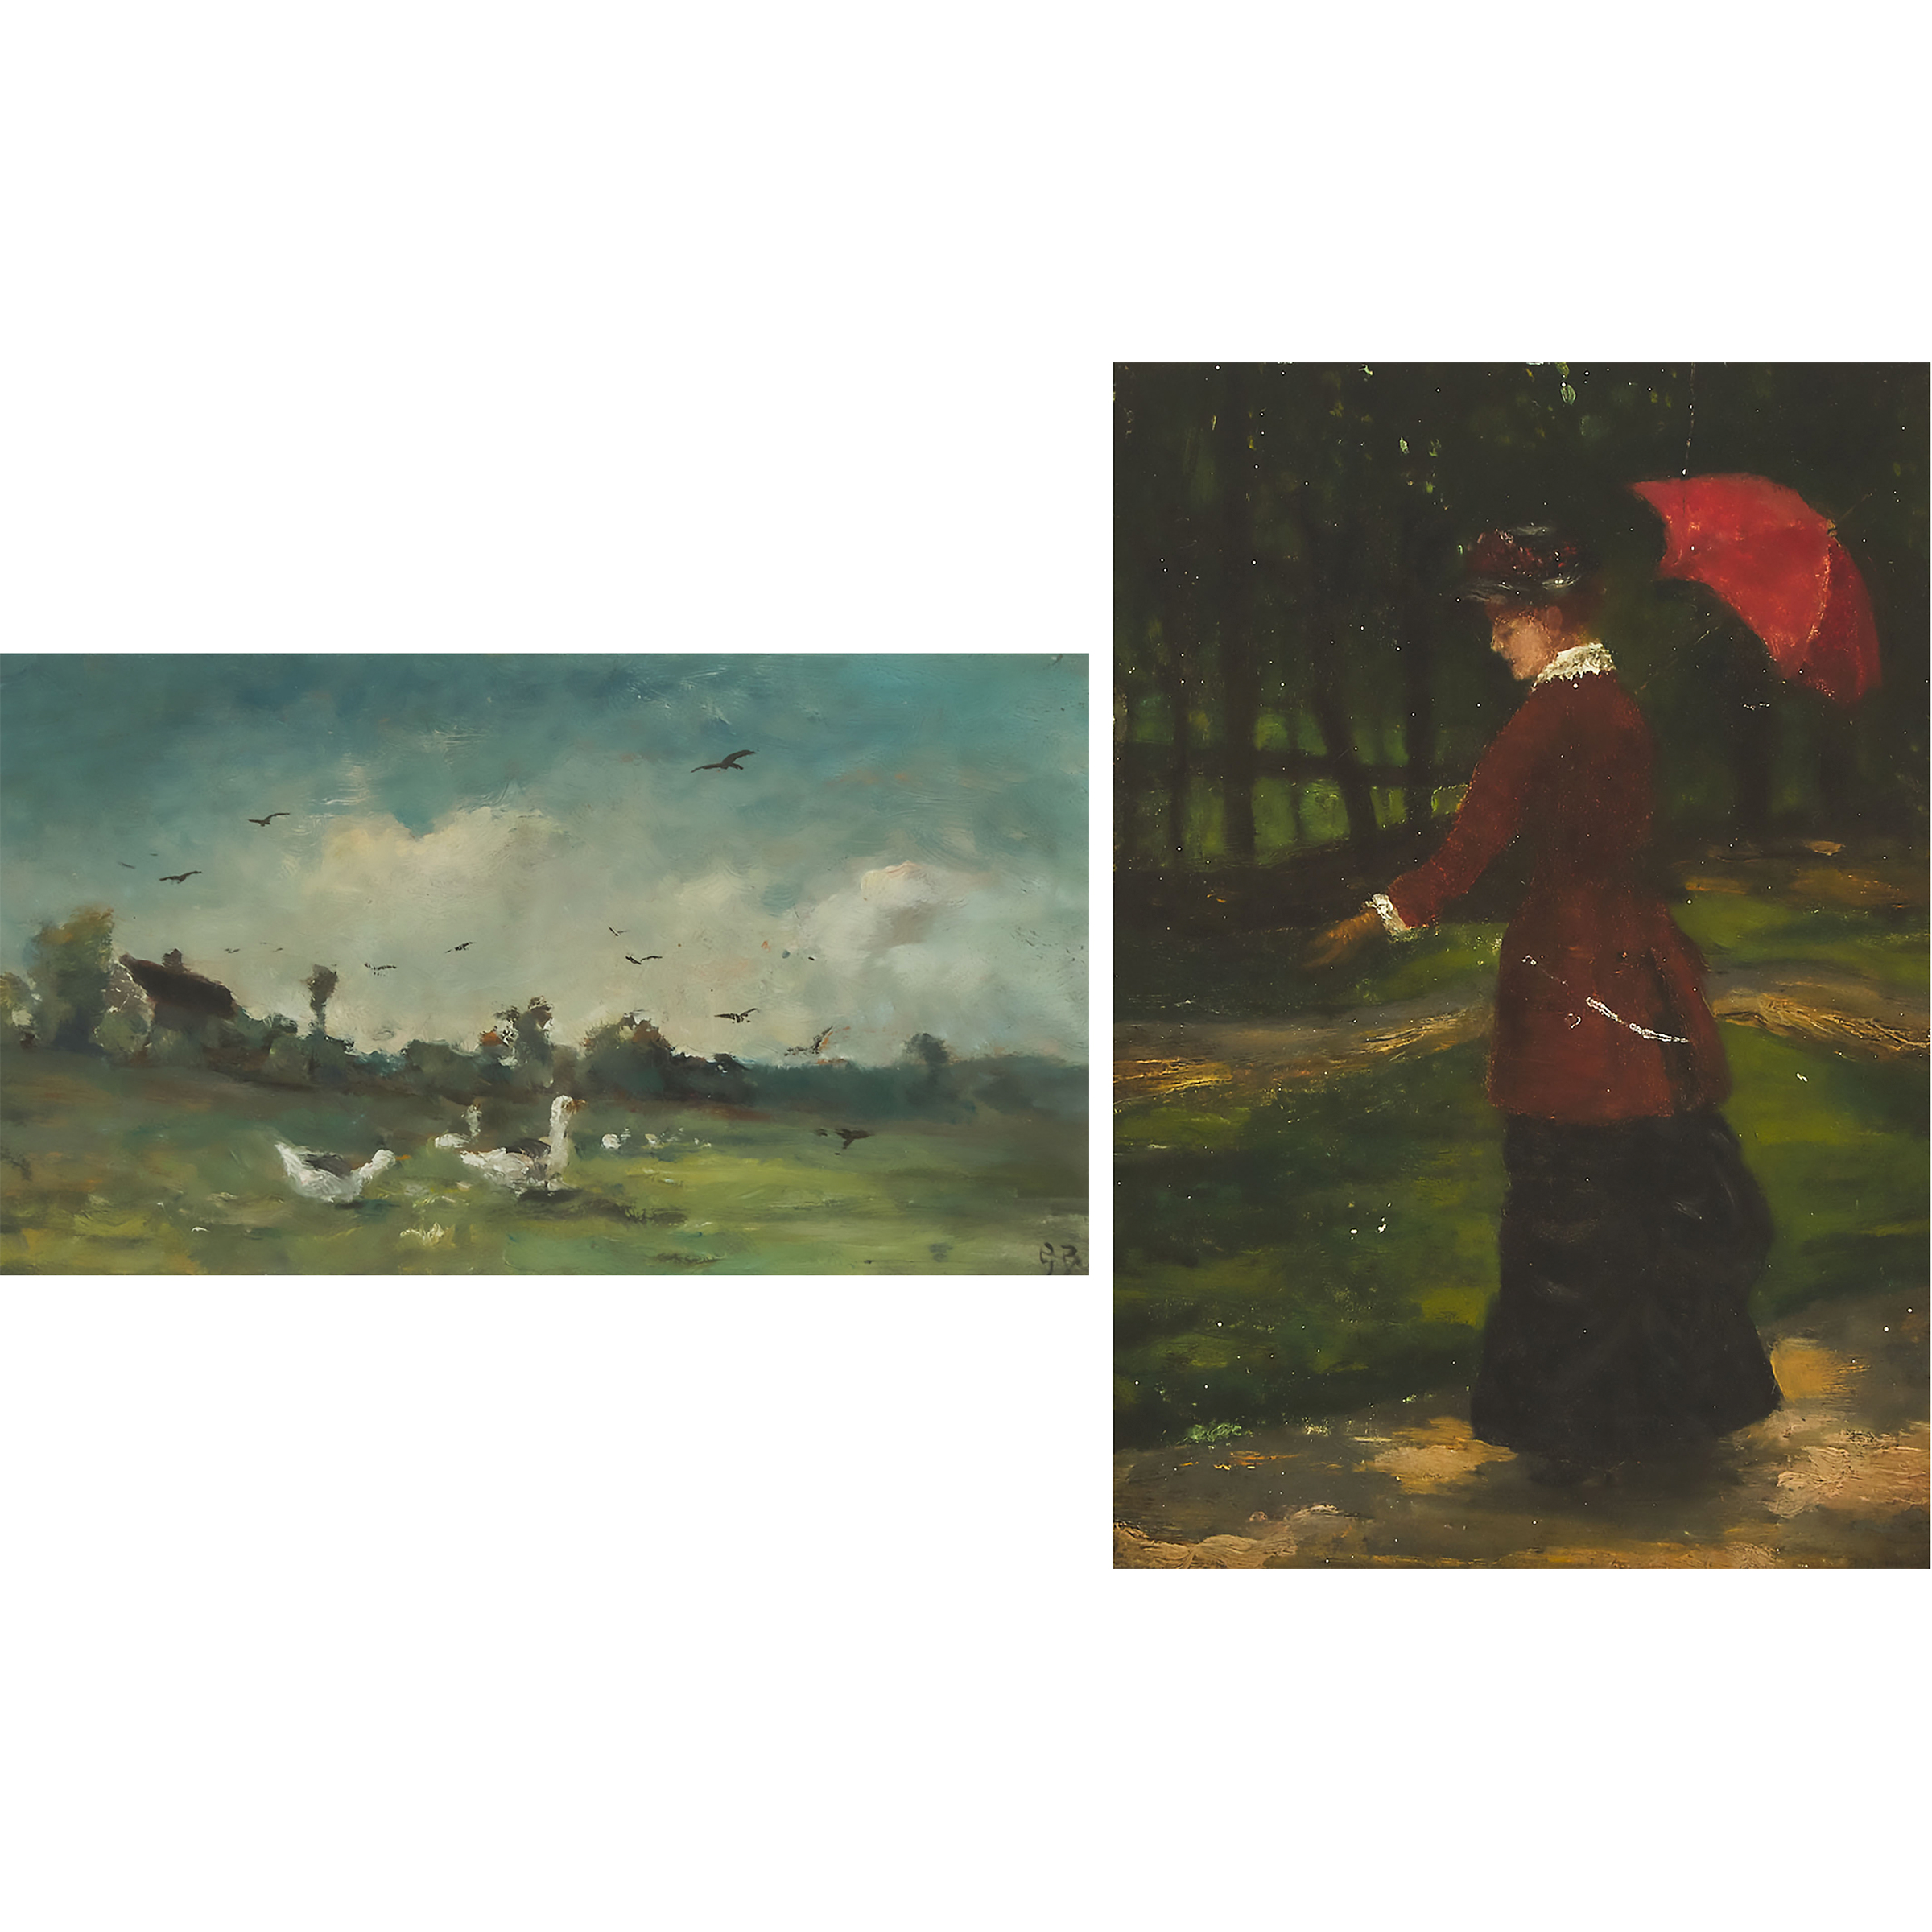 George A. Boyle (1826-1899); Unknown artist, follower of Pierre-Auguste Renoir (1841-1919)